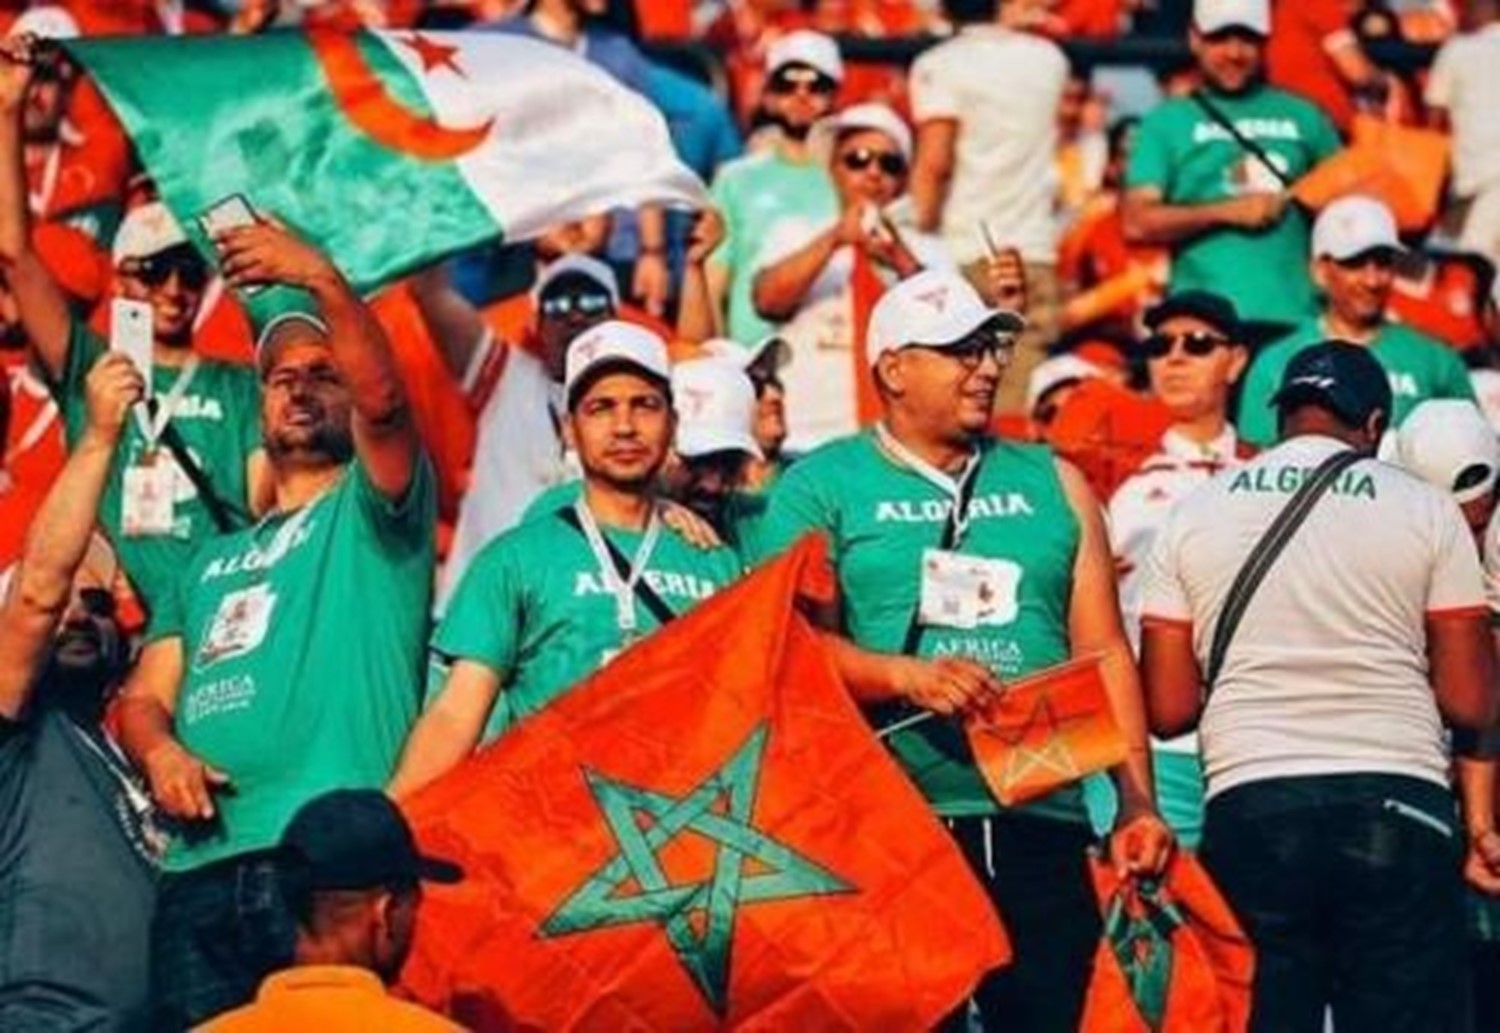 الشارع المغربي يهتز فرحا مع المنتخب الجزائري تحت شعار "خاوة خاوة "